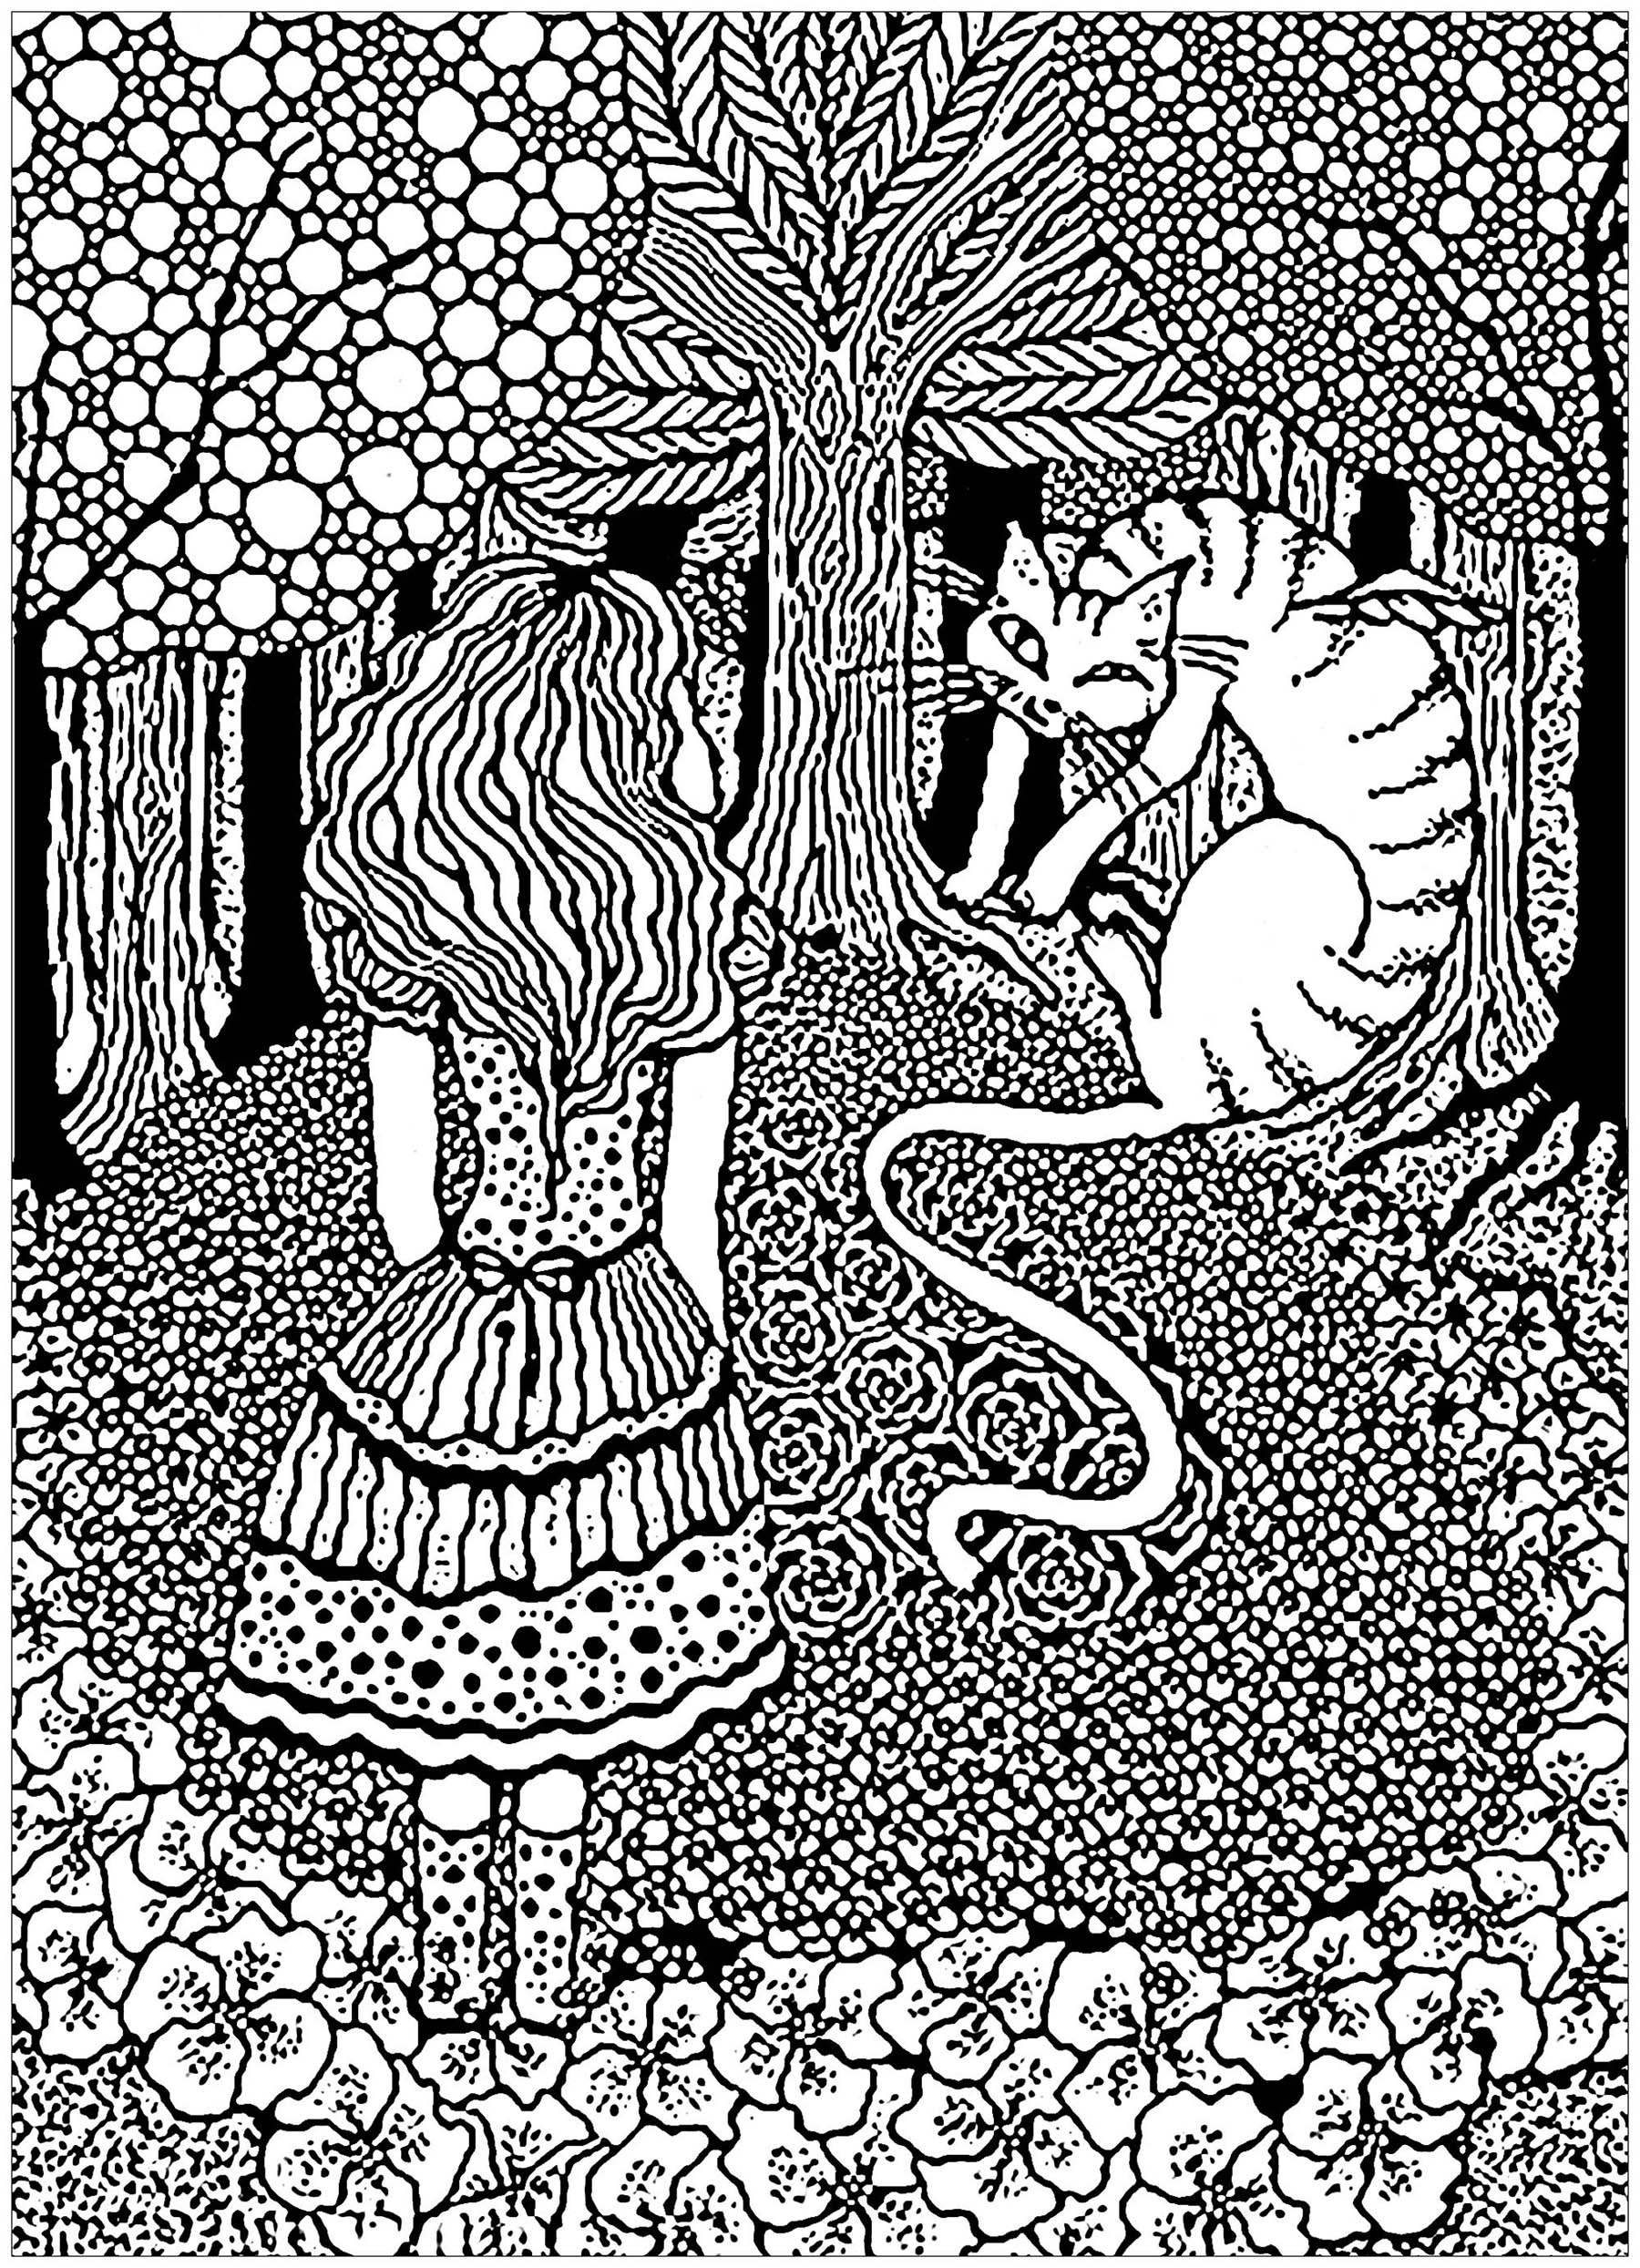 Un coloriage très complexe inspiré par Alice aux Pays des merveilles, avec le Chat Cheshire